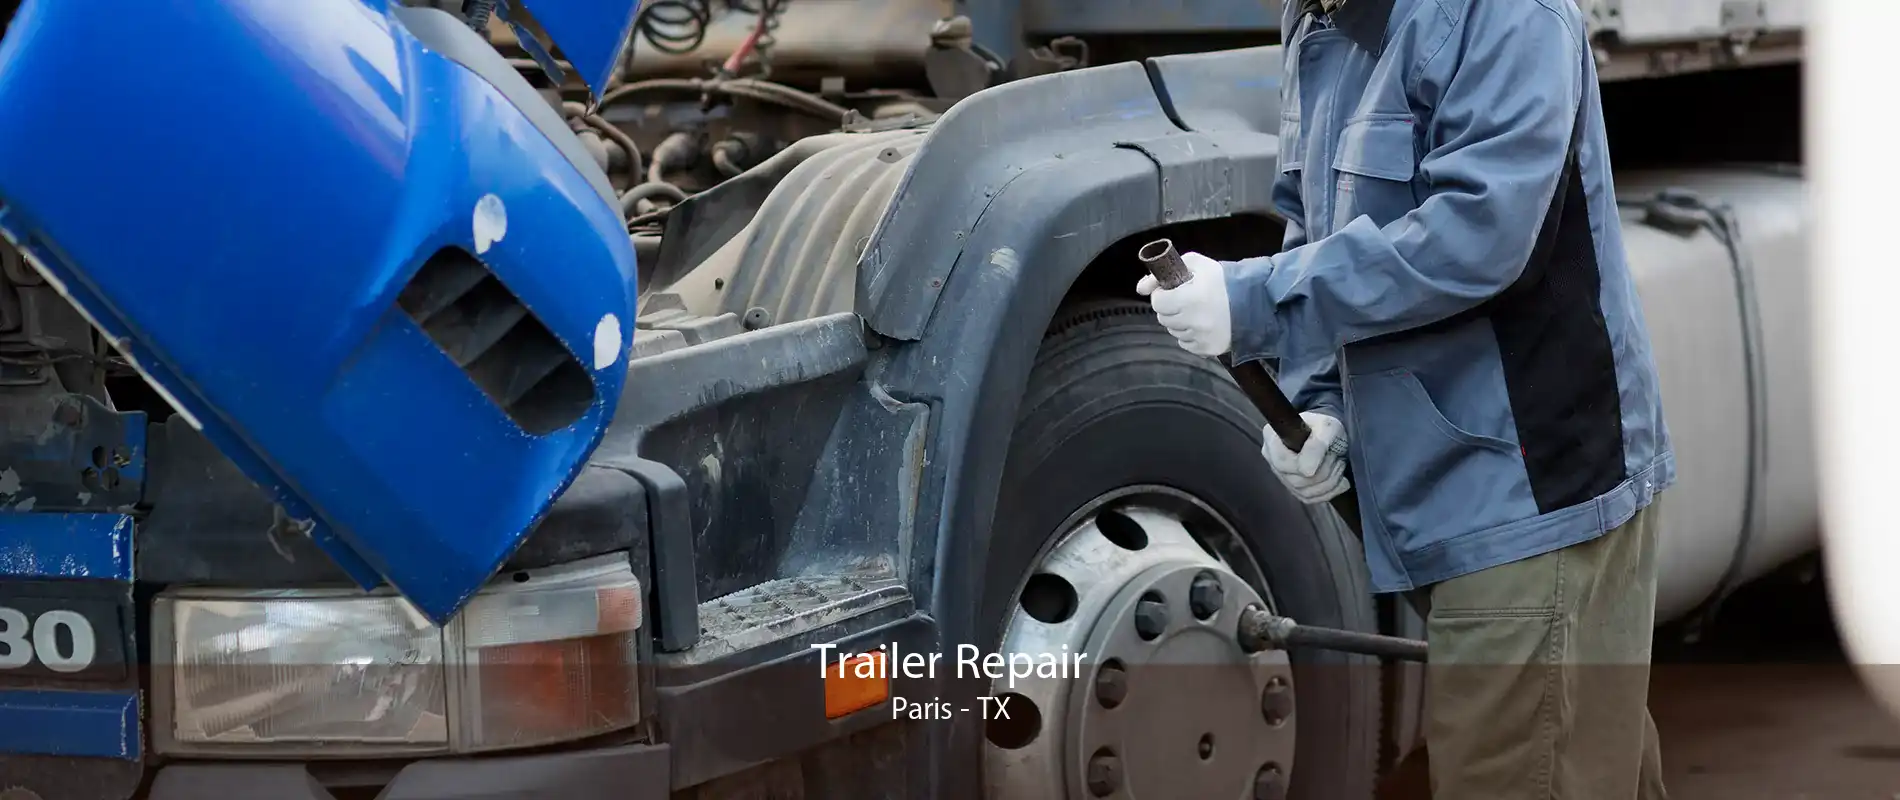 Trailer Repair Paris - TX